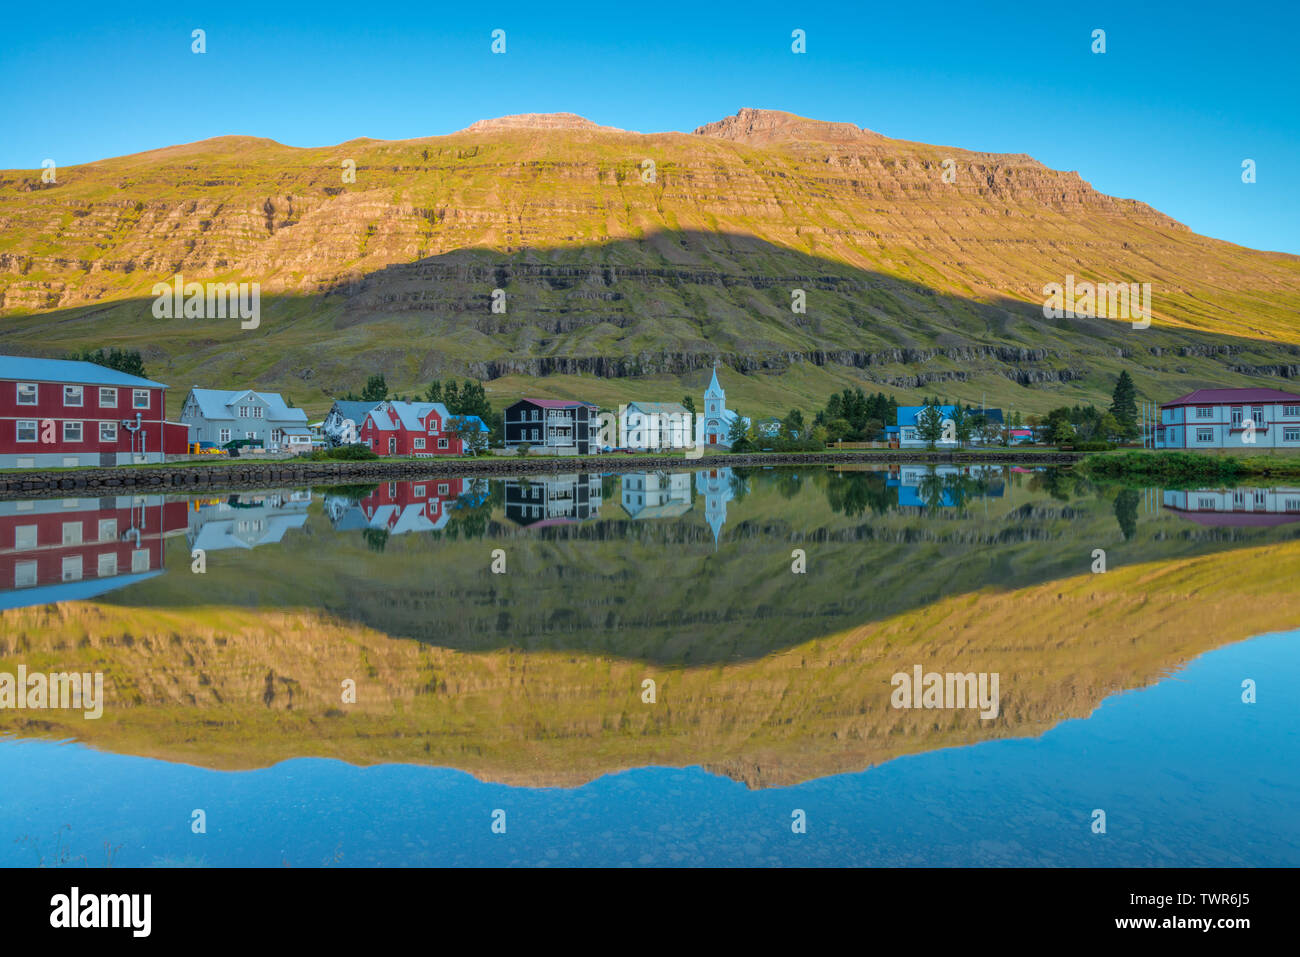 Perfetto riflesso di acqua, perfetta immagine speculare di un fiordo islandese città nell'acqua, sunrise riflessione con la montagna perfetta ombra nel fiordo Foto Stock